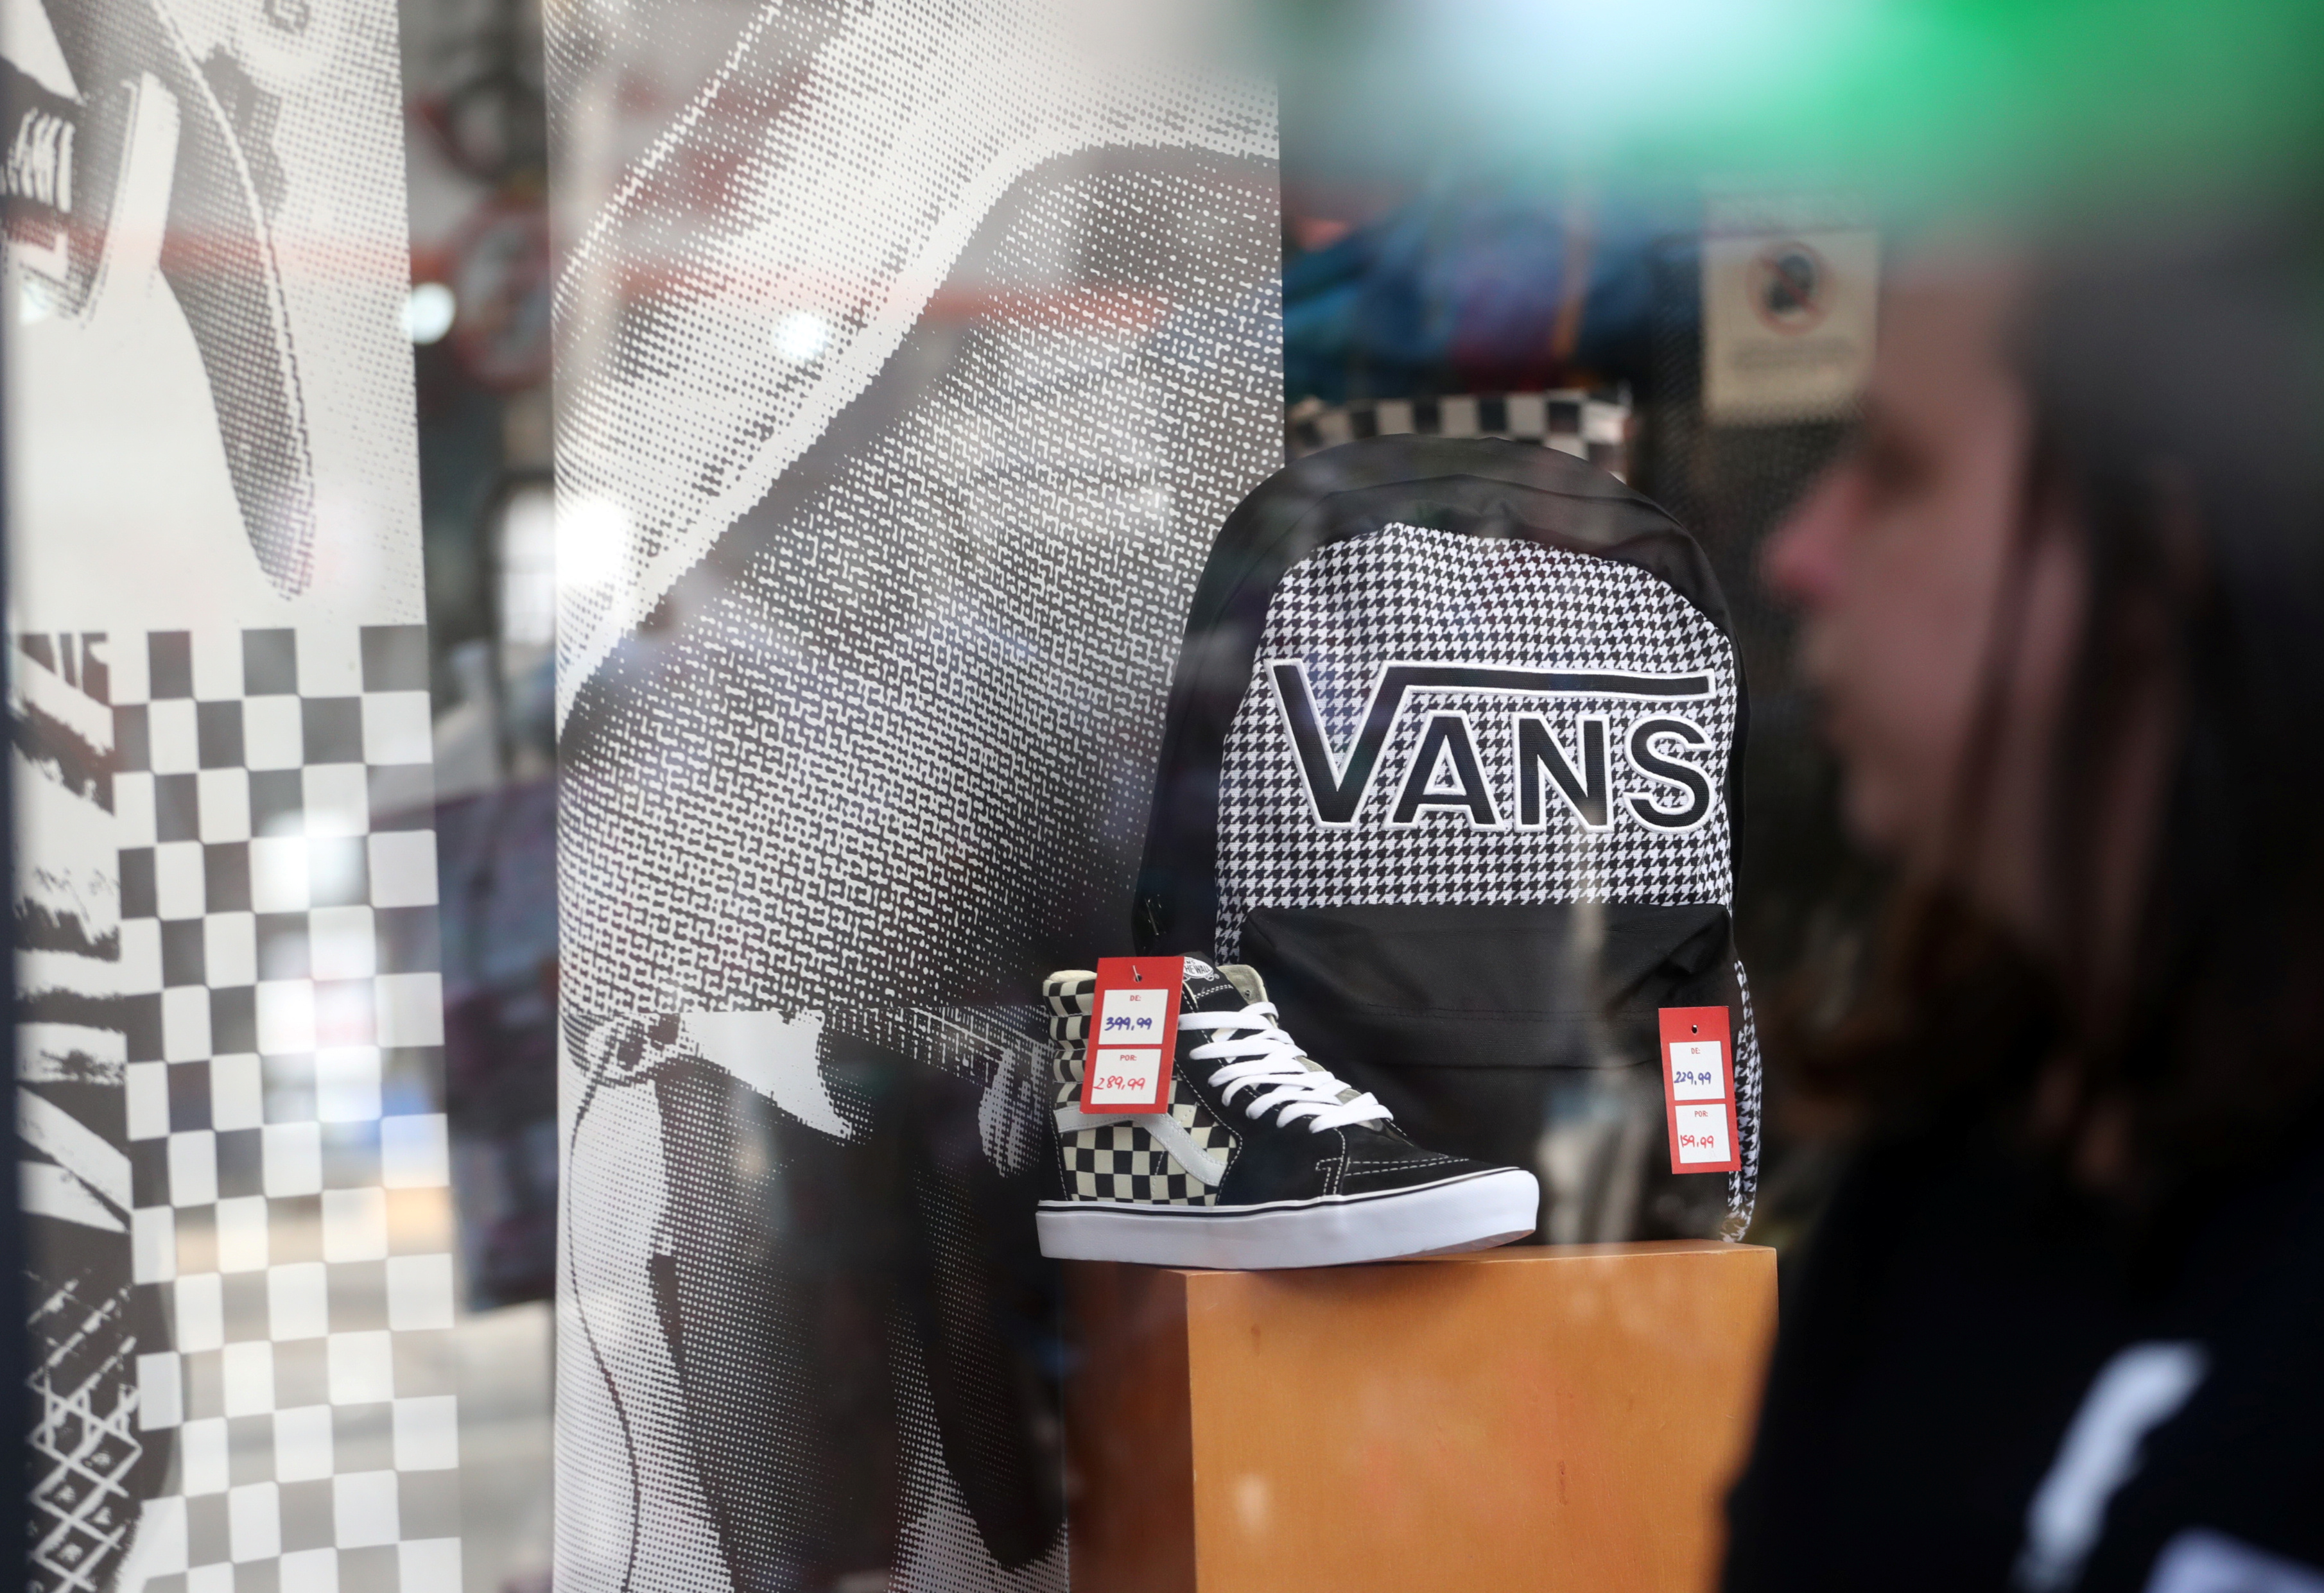 Vans sneaker maker VF sales stumble on 